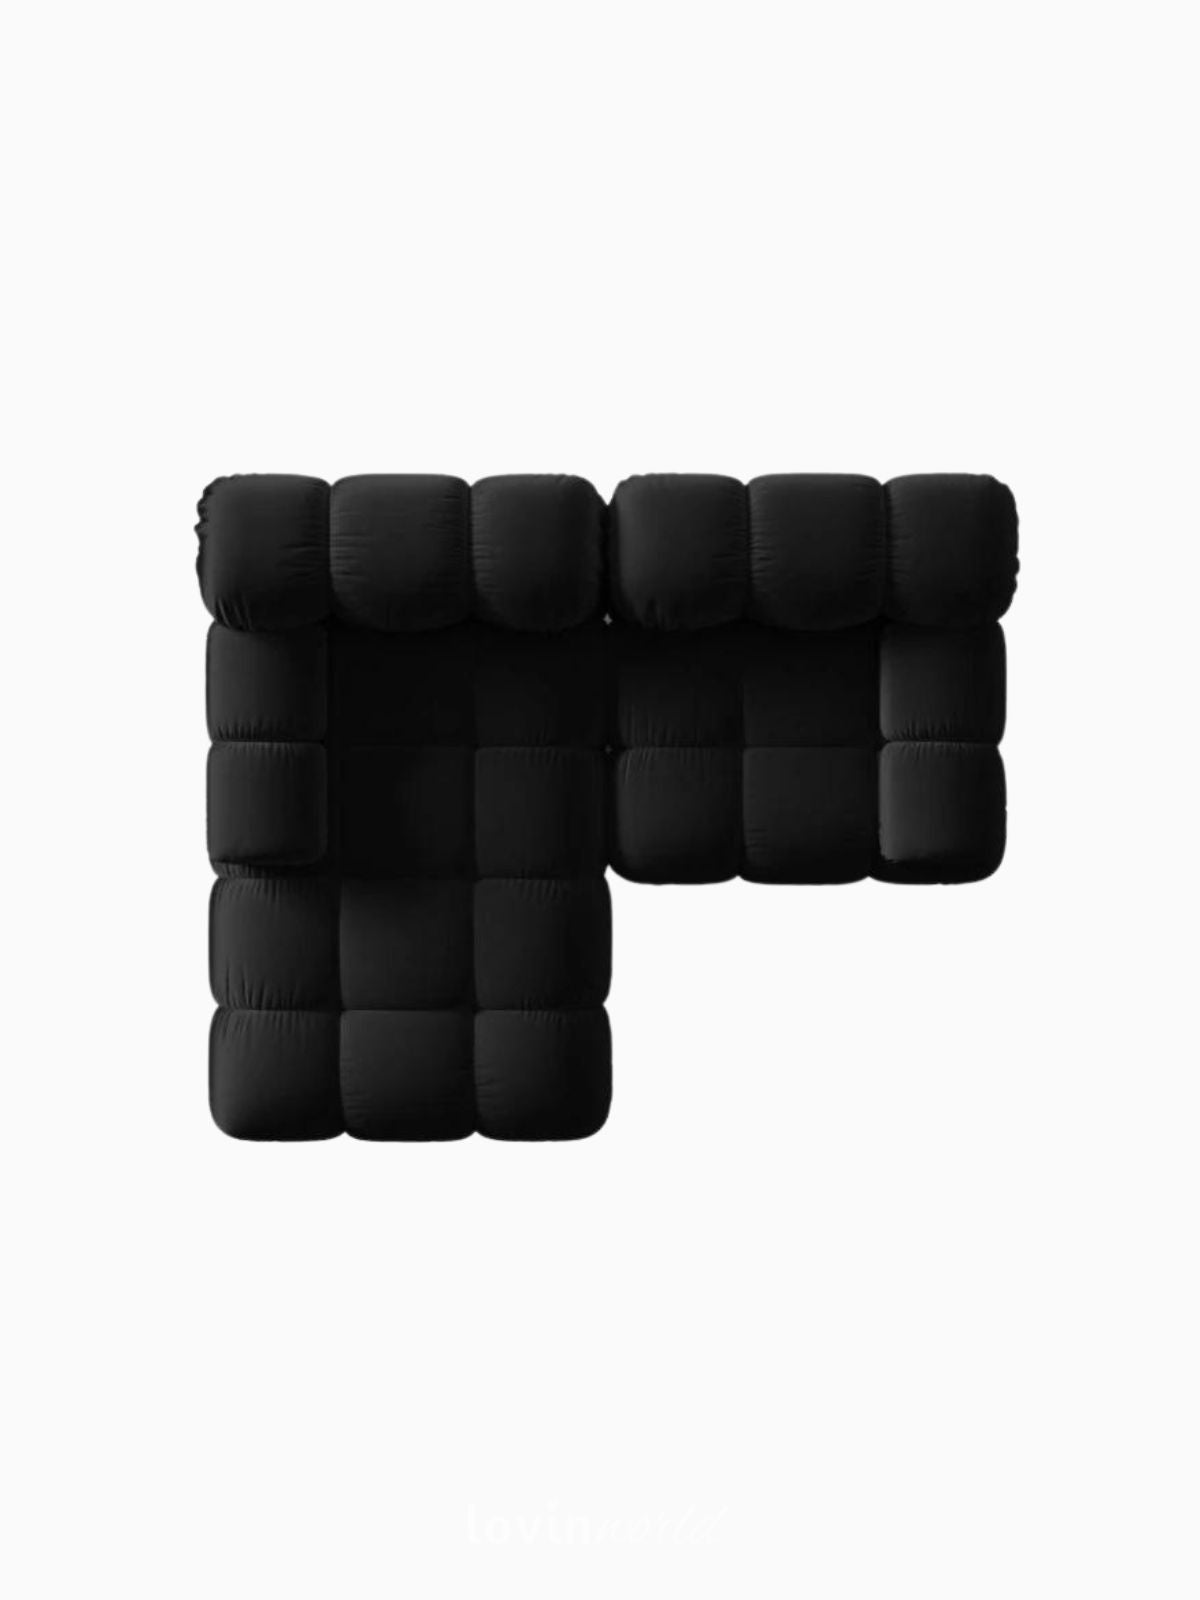 Divano modulare 3 posti Bellis in velluto, colore nero-5